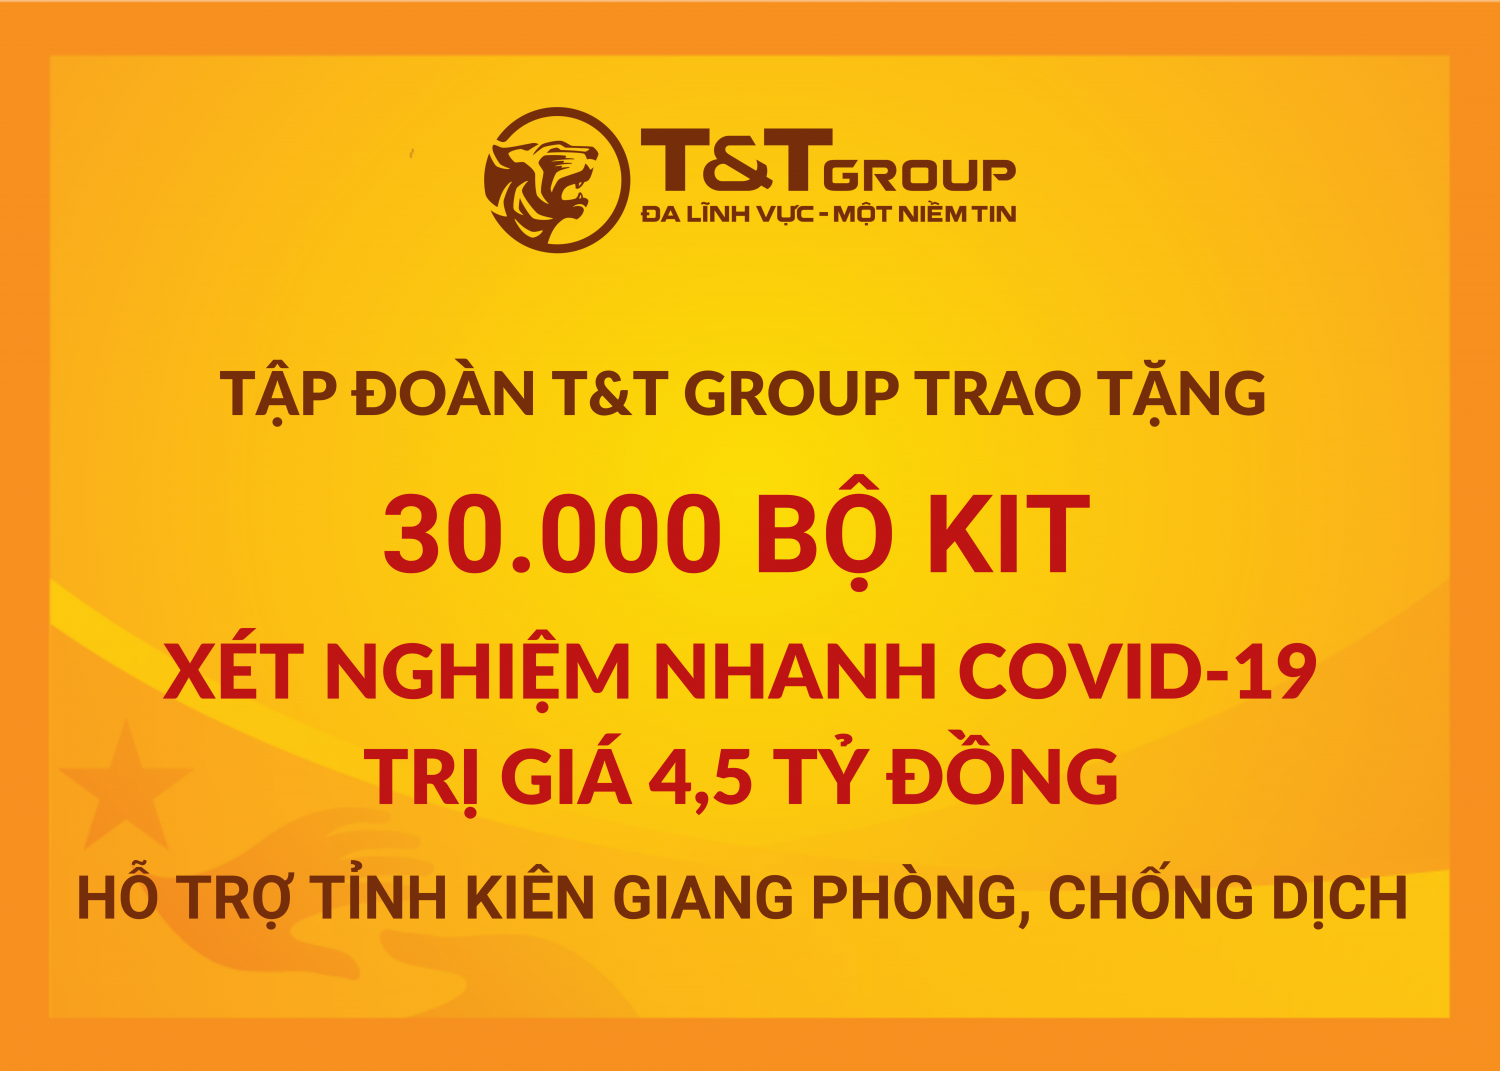 T&T Group tặng 50.000 bộ kit xét nghiệm nhanh Covid-19 trị giá 7,5 tỷ đồng cho Thanh Hóa và Kiên Giang